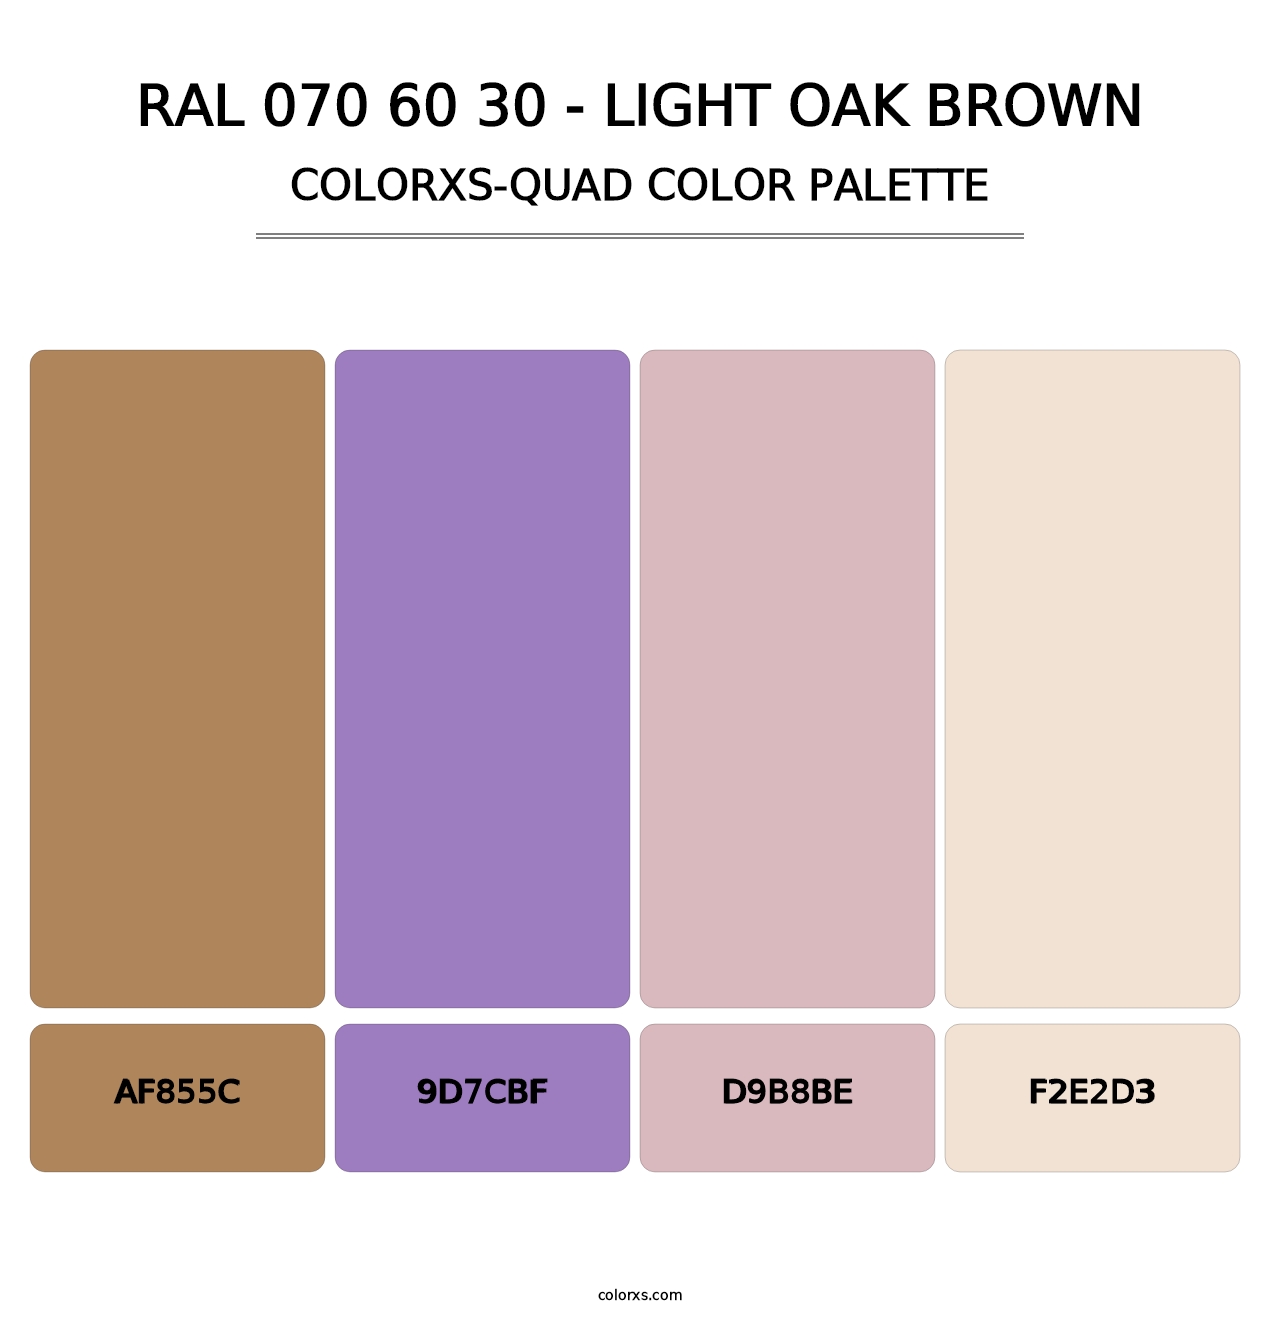 RAL 070 60 30 - Light Oak Brown - Colorxs Quad Palette